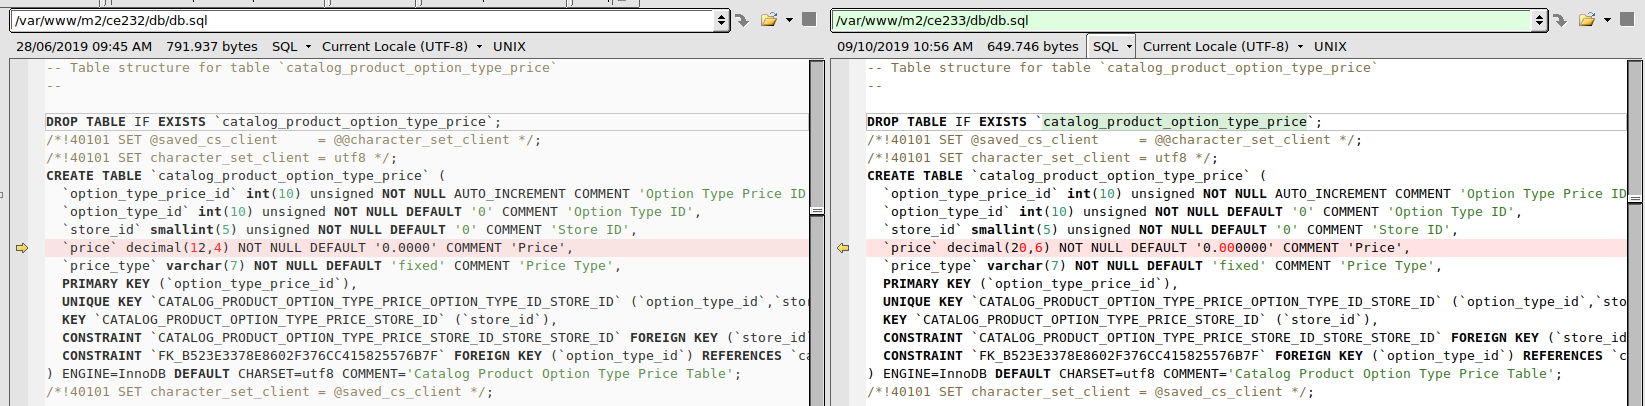 Magento 2.3.3 database - Catalog Product Option Type Price